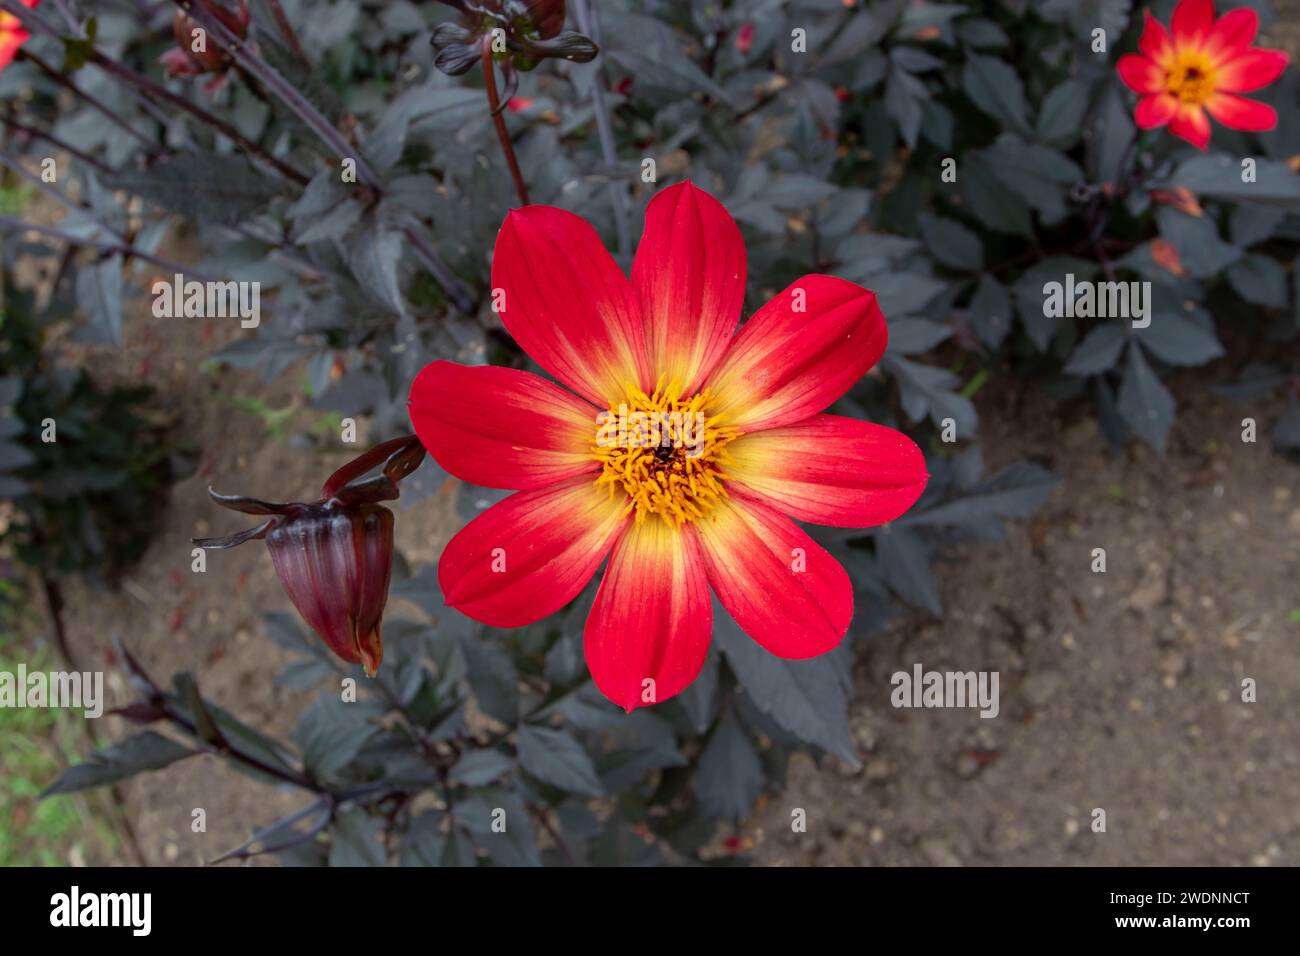 Fiori dahlia rossi e foglie quasi nere a contrasto. Testa di fiori chiara e fogliame scuro. Fiore semplice con otto petali e centro giallo. Foto Stock